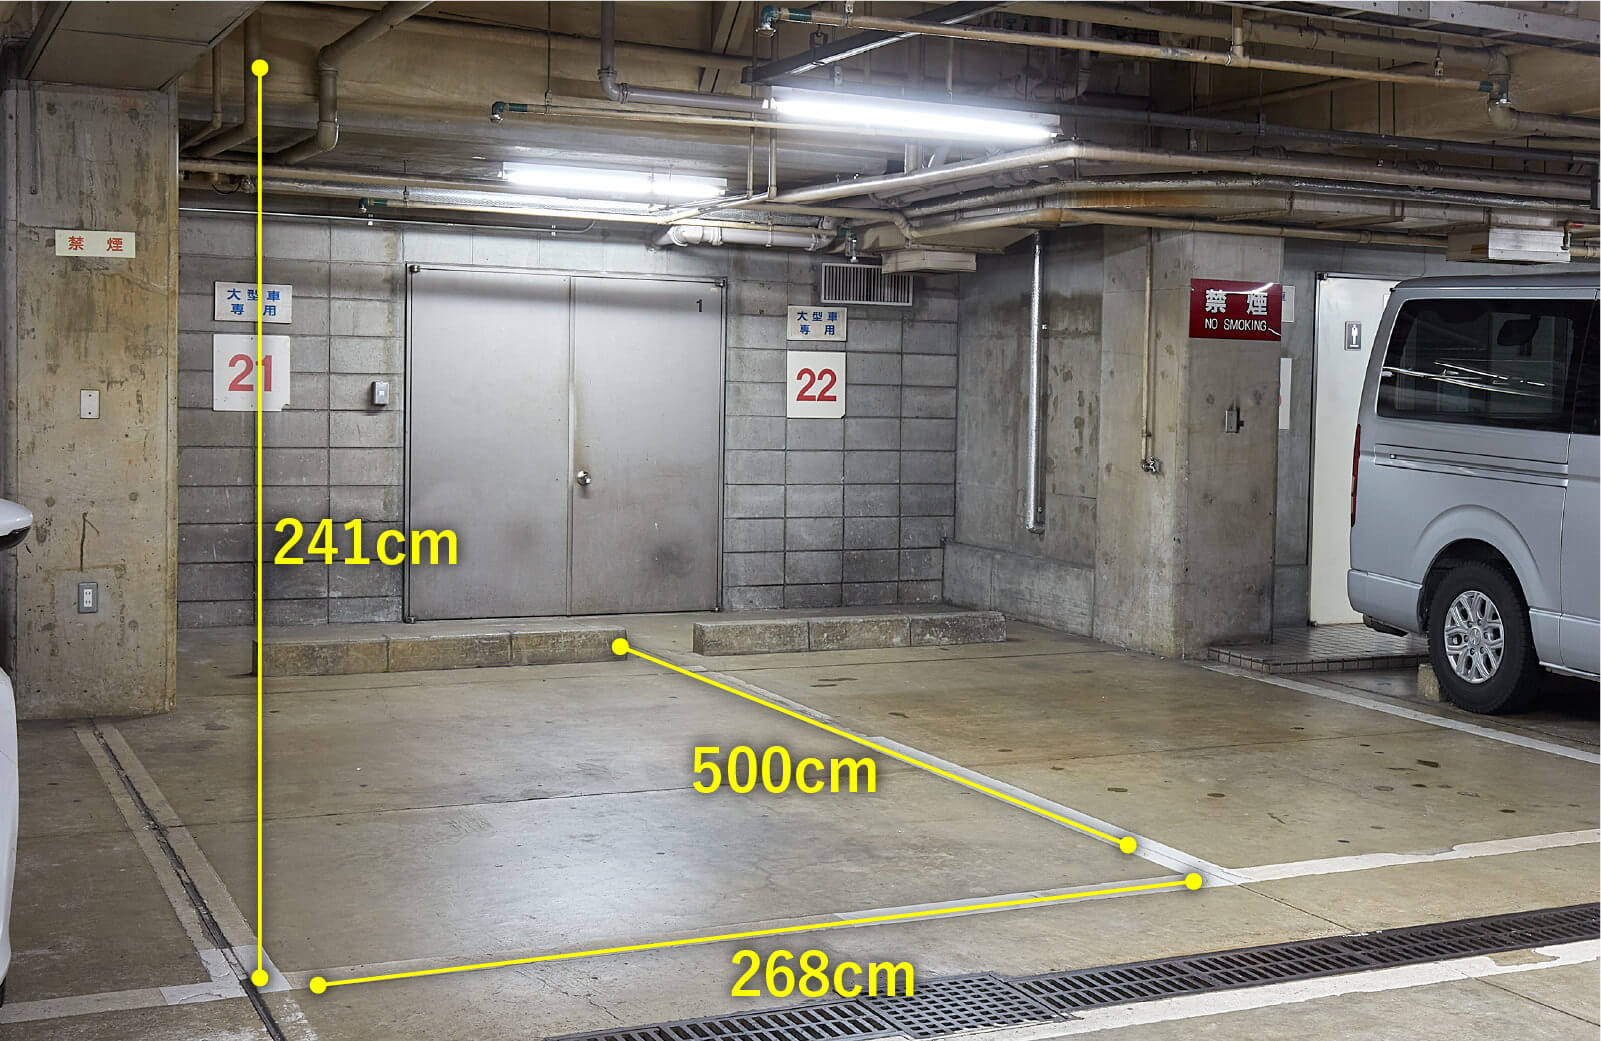 駐車場サイズ 横幅268センチメートル 奥行500センチメートル 高さ241センチメートル